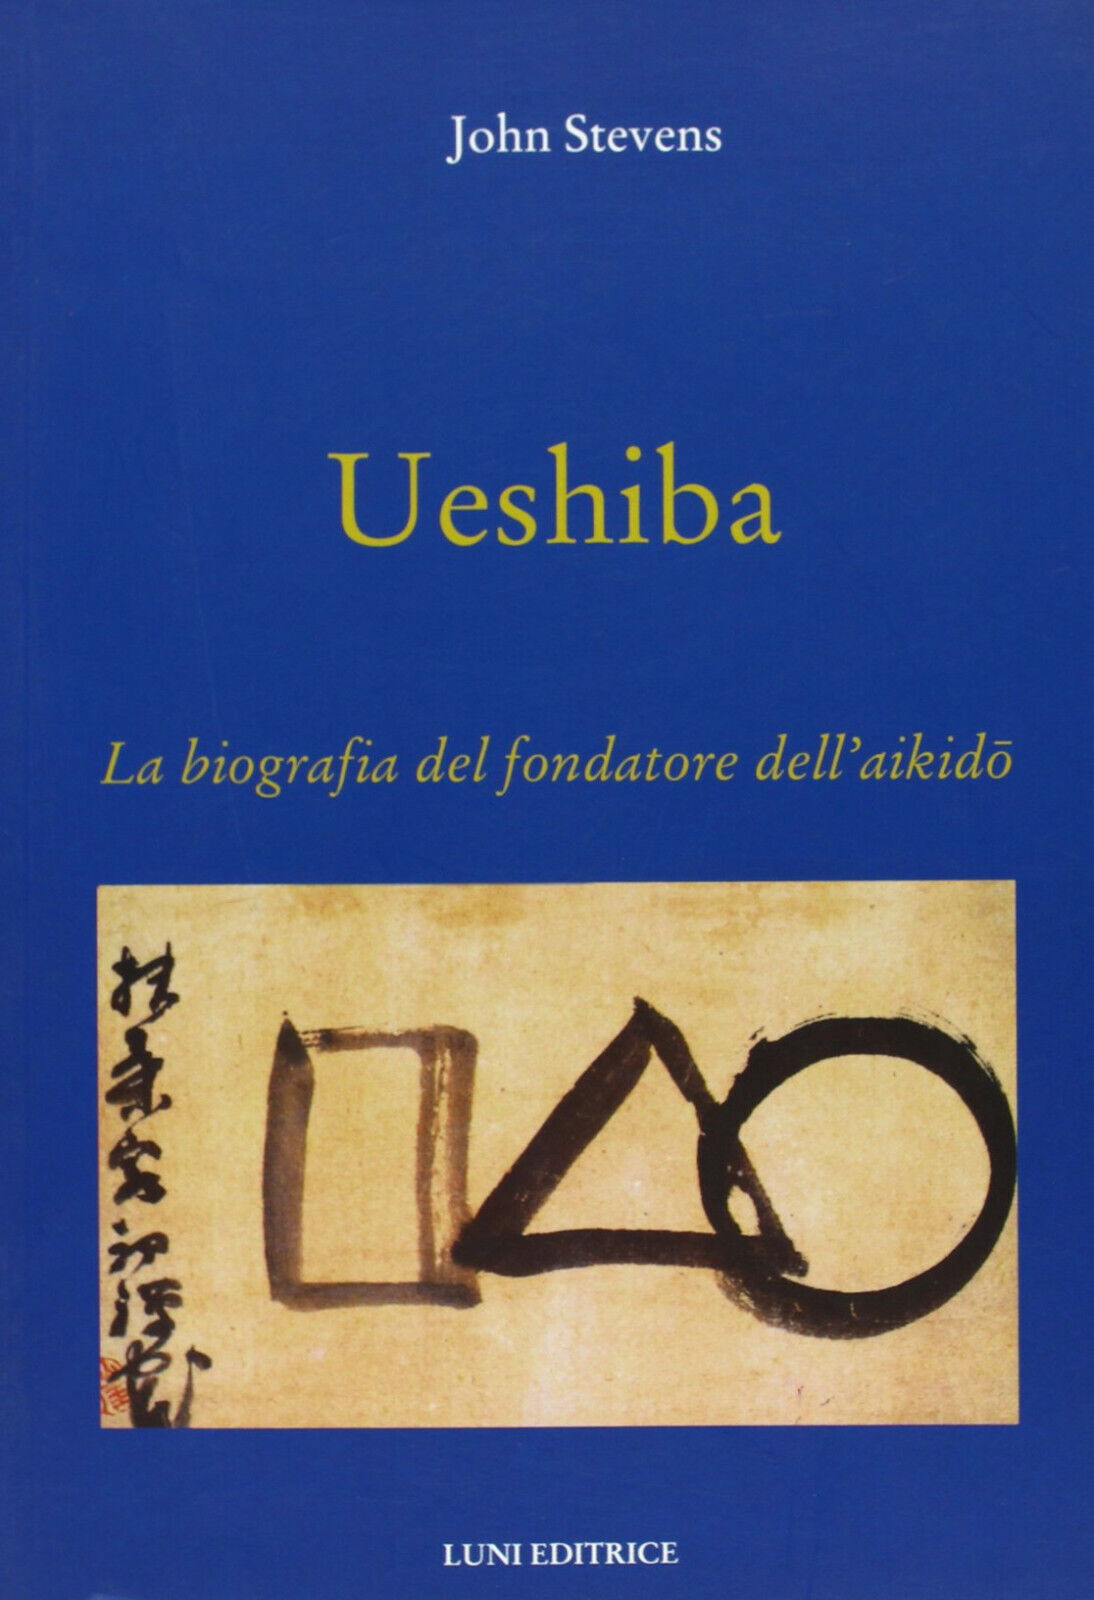 Ueshiba. La biografia del fondatore dell'aikido - John Stevens - Luni, 2013 libro usato